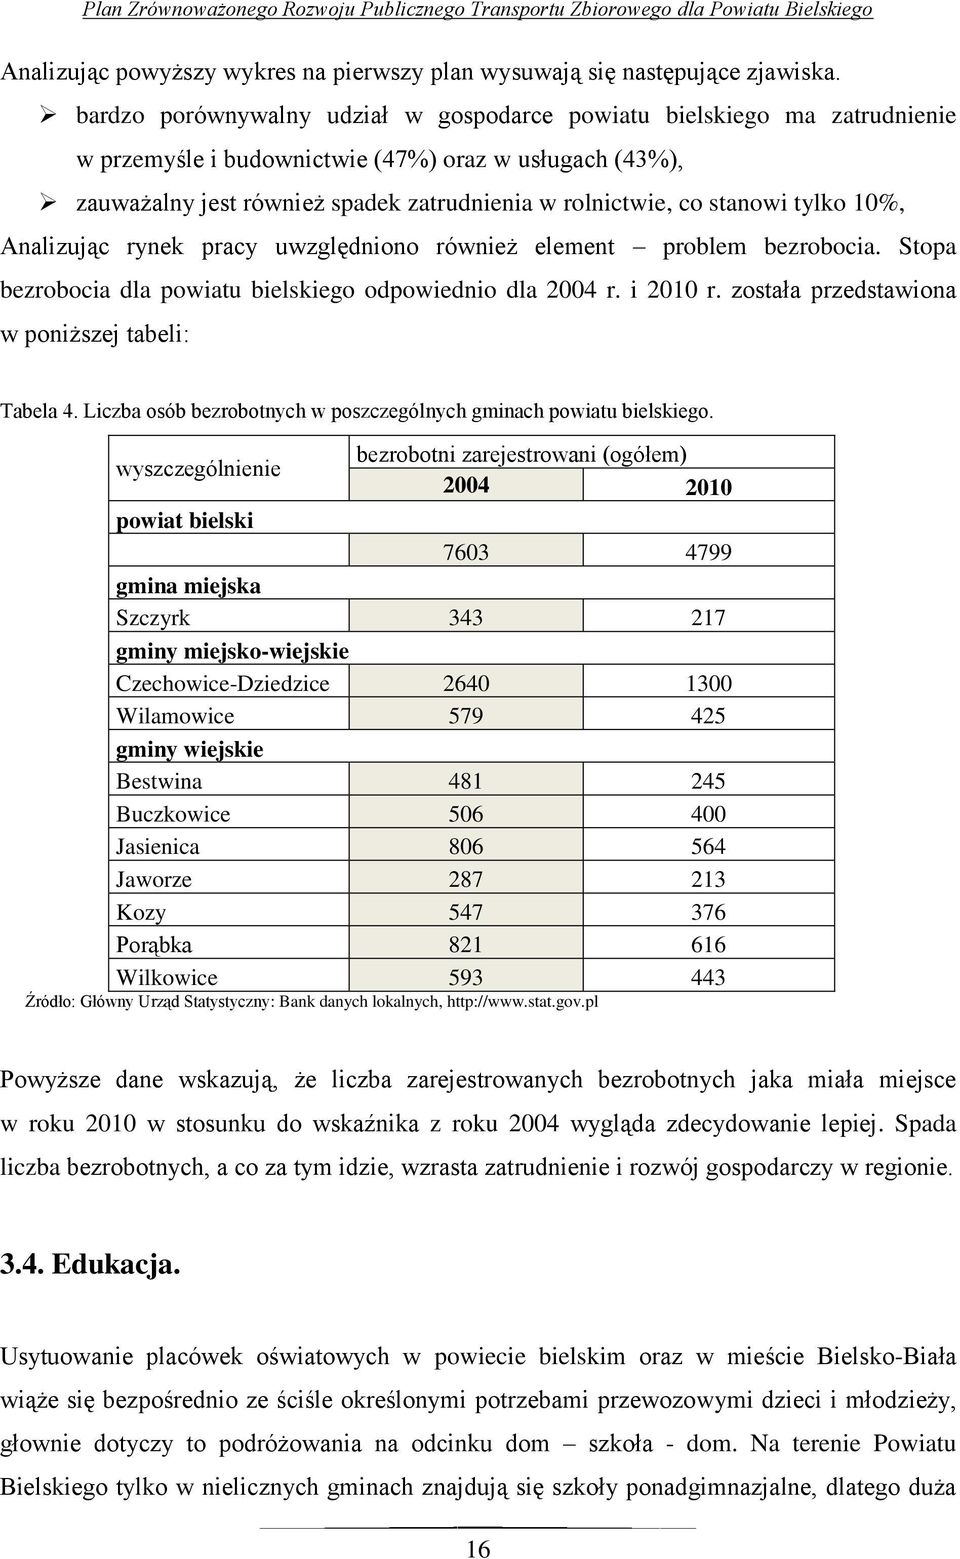 tylko 10%, Analizując rynek pracy uwzględniono również element problem bezrobocia. Stopa bezrobocia dla powiatu bielskiego odpowiednio dla 2004 r. i 2010 r.